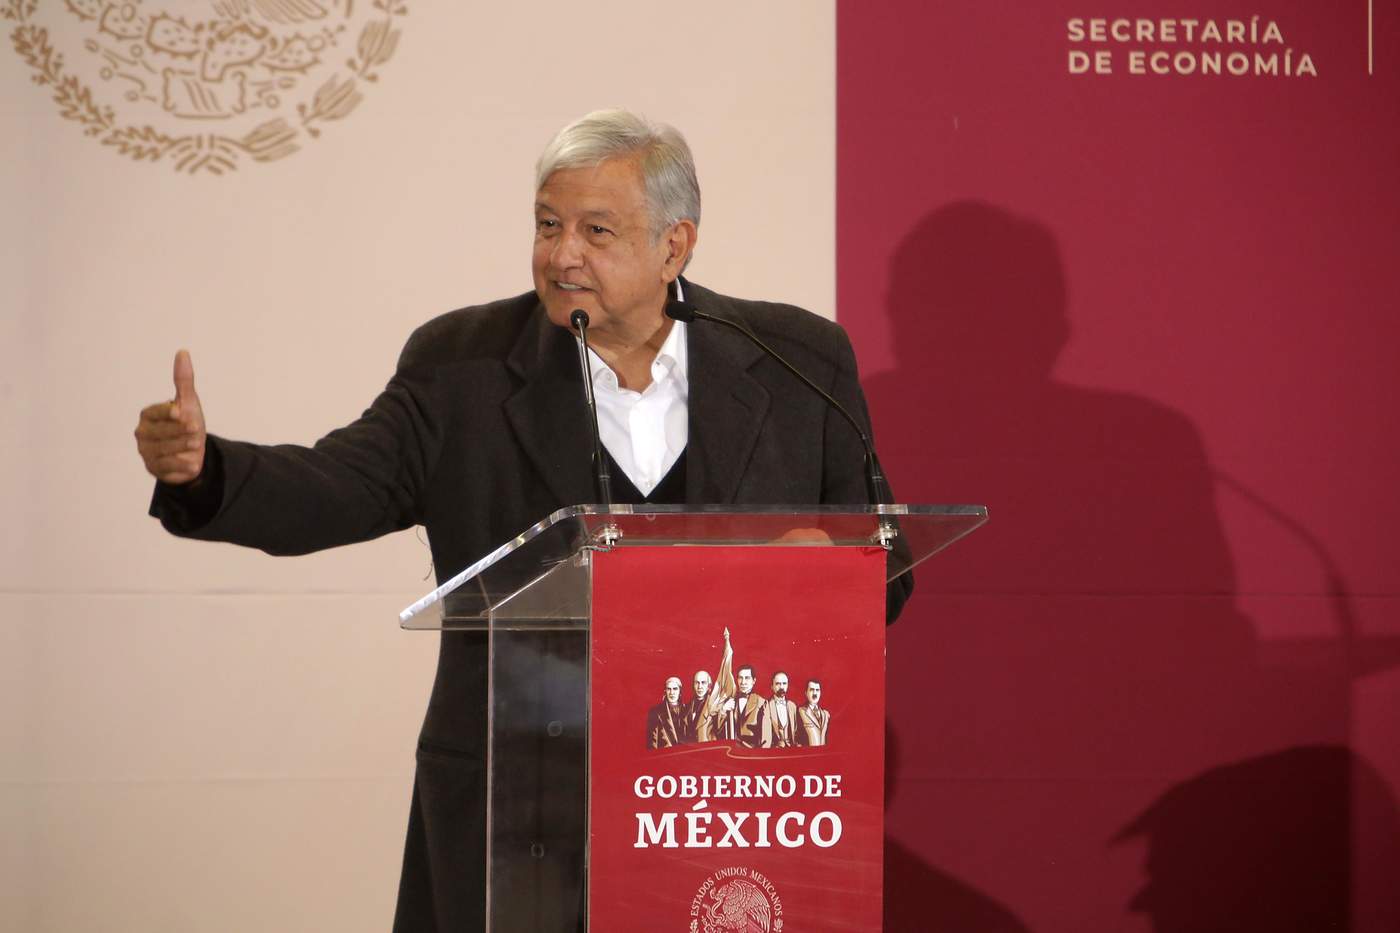 López Obrador se refirió al robo de combustible que llegó a representar 60 mil millones de pesos al año y aseguró que eso se permitía desde hace 19 años.

